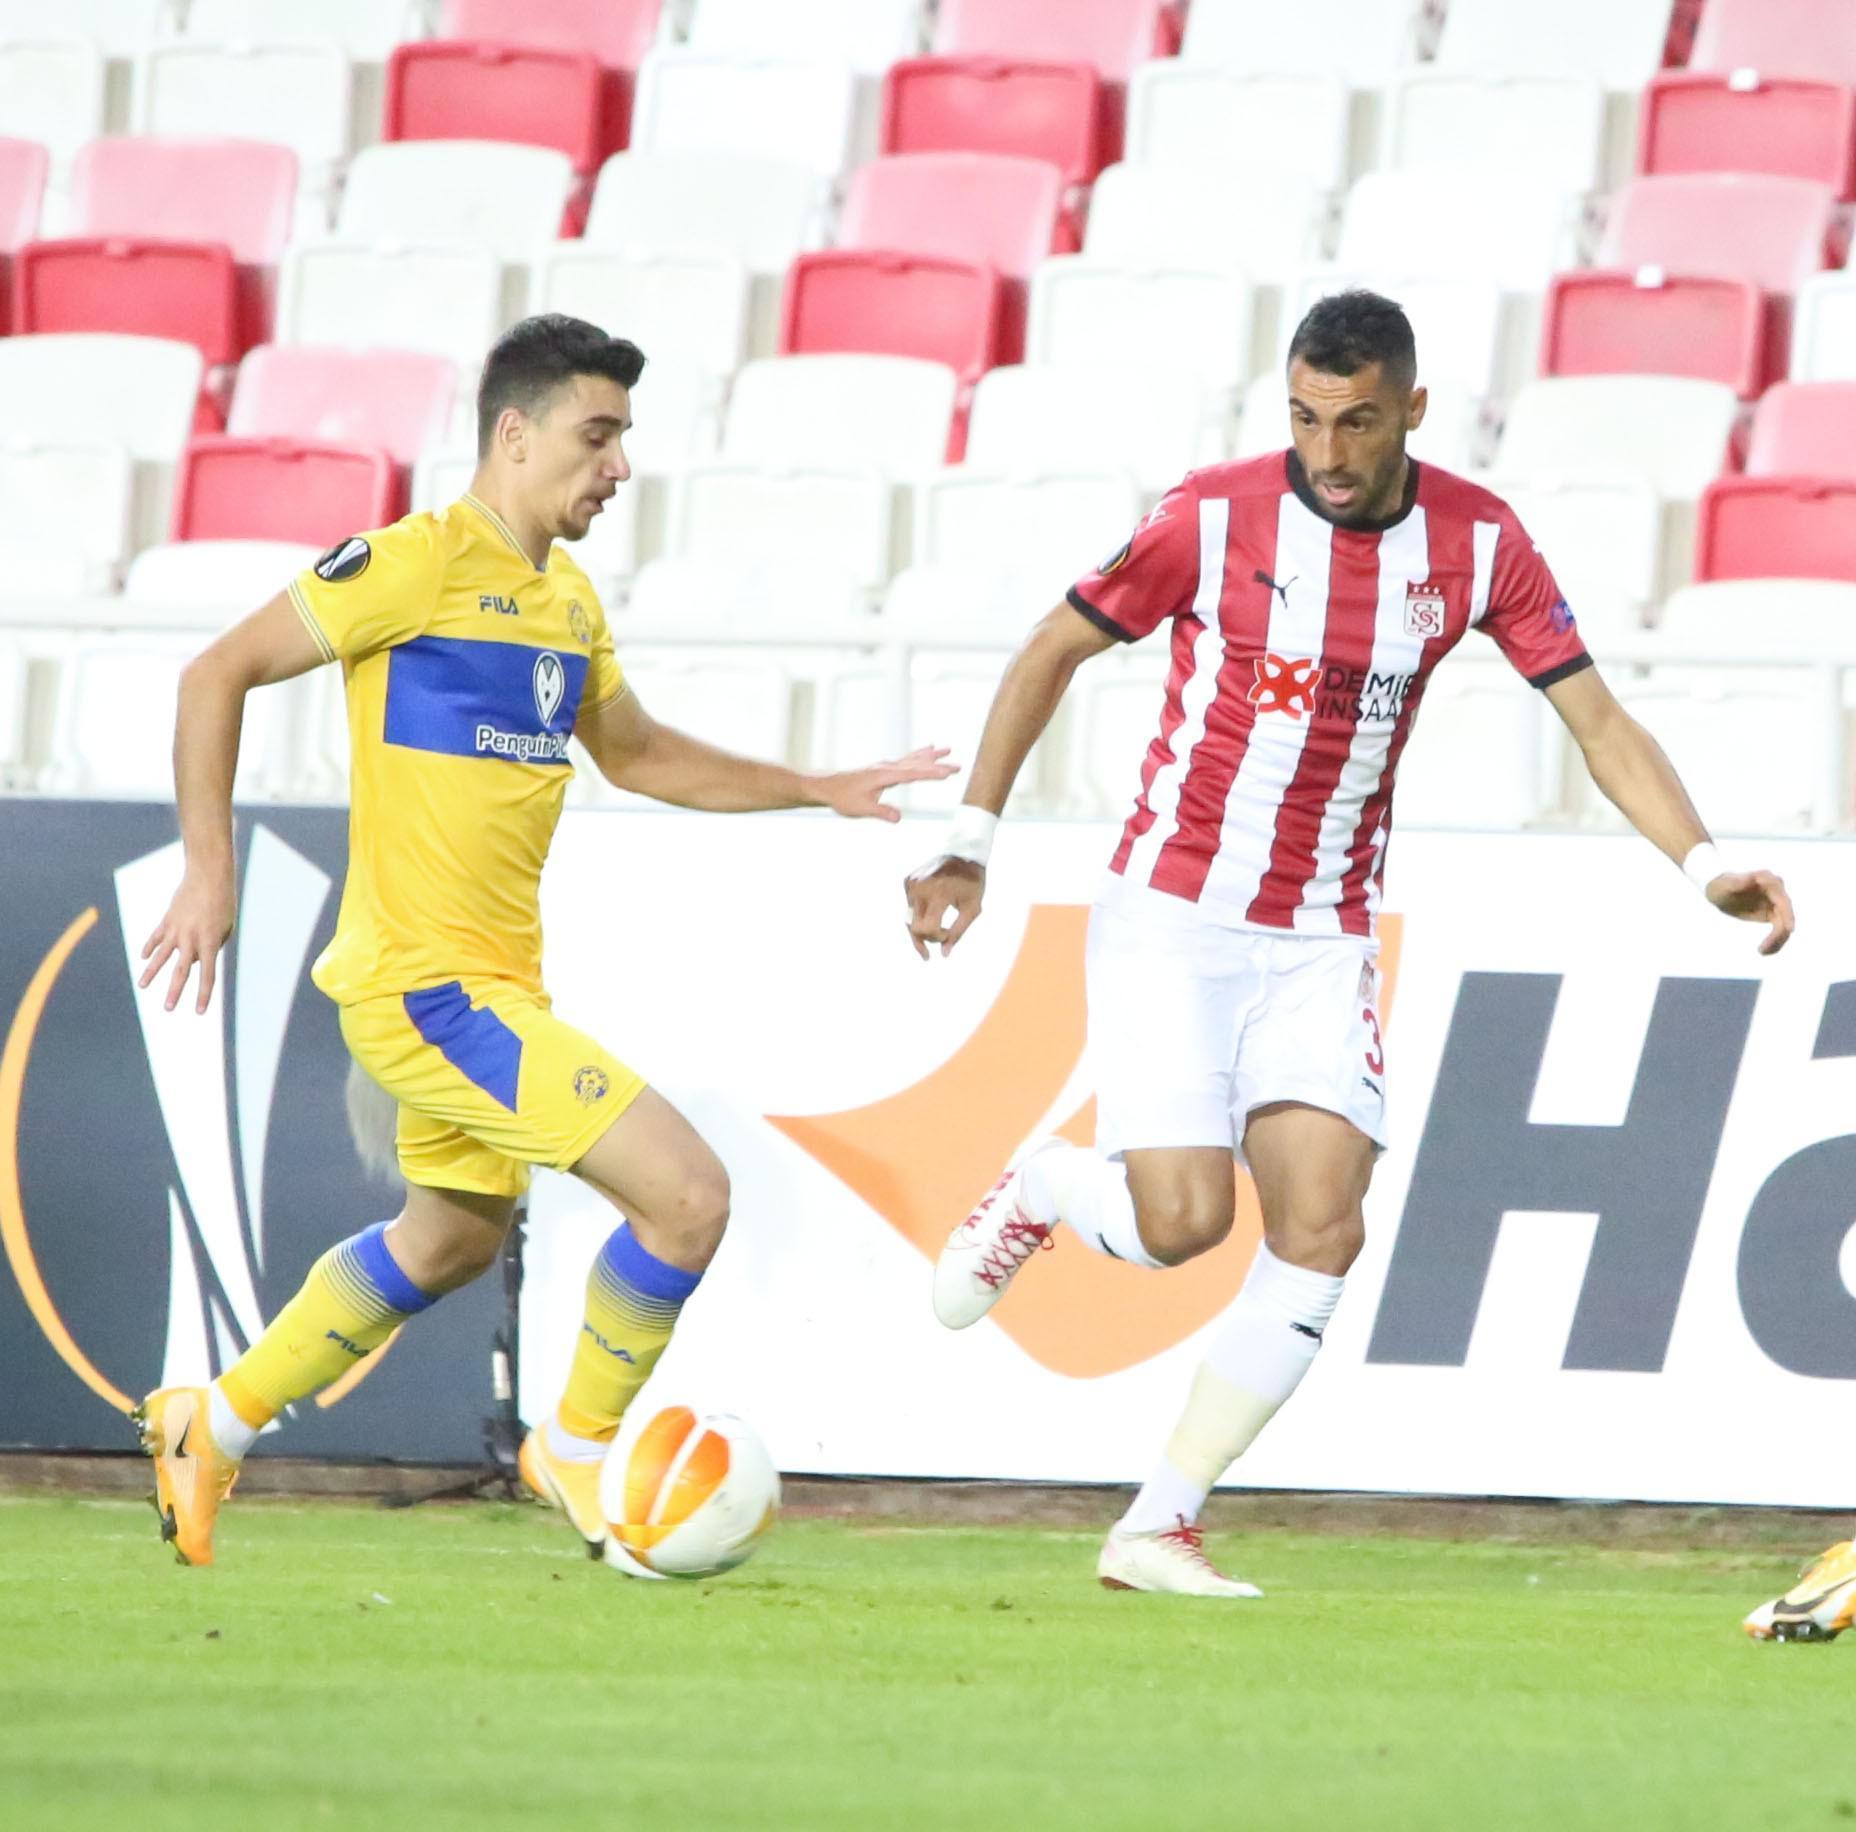 (ÖZET) Sivasspor - Maccabi Tel-Aviv maç sonucu: 1-2